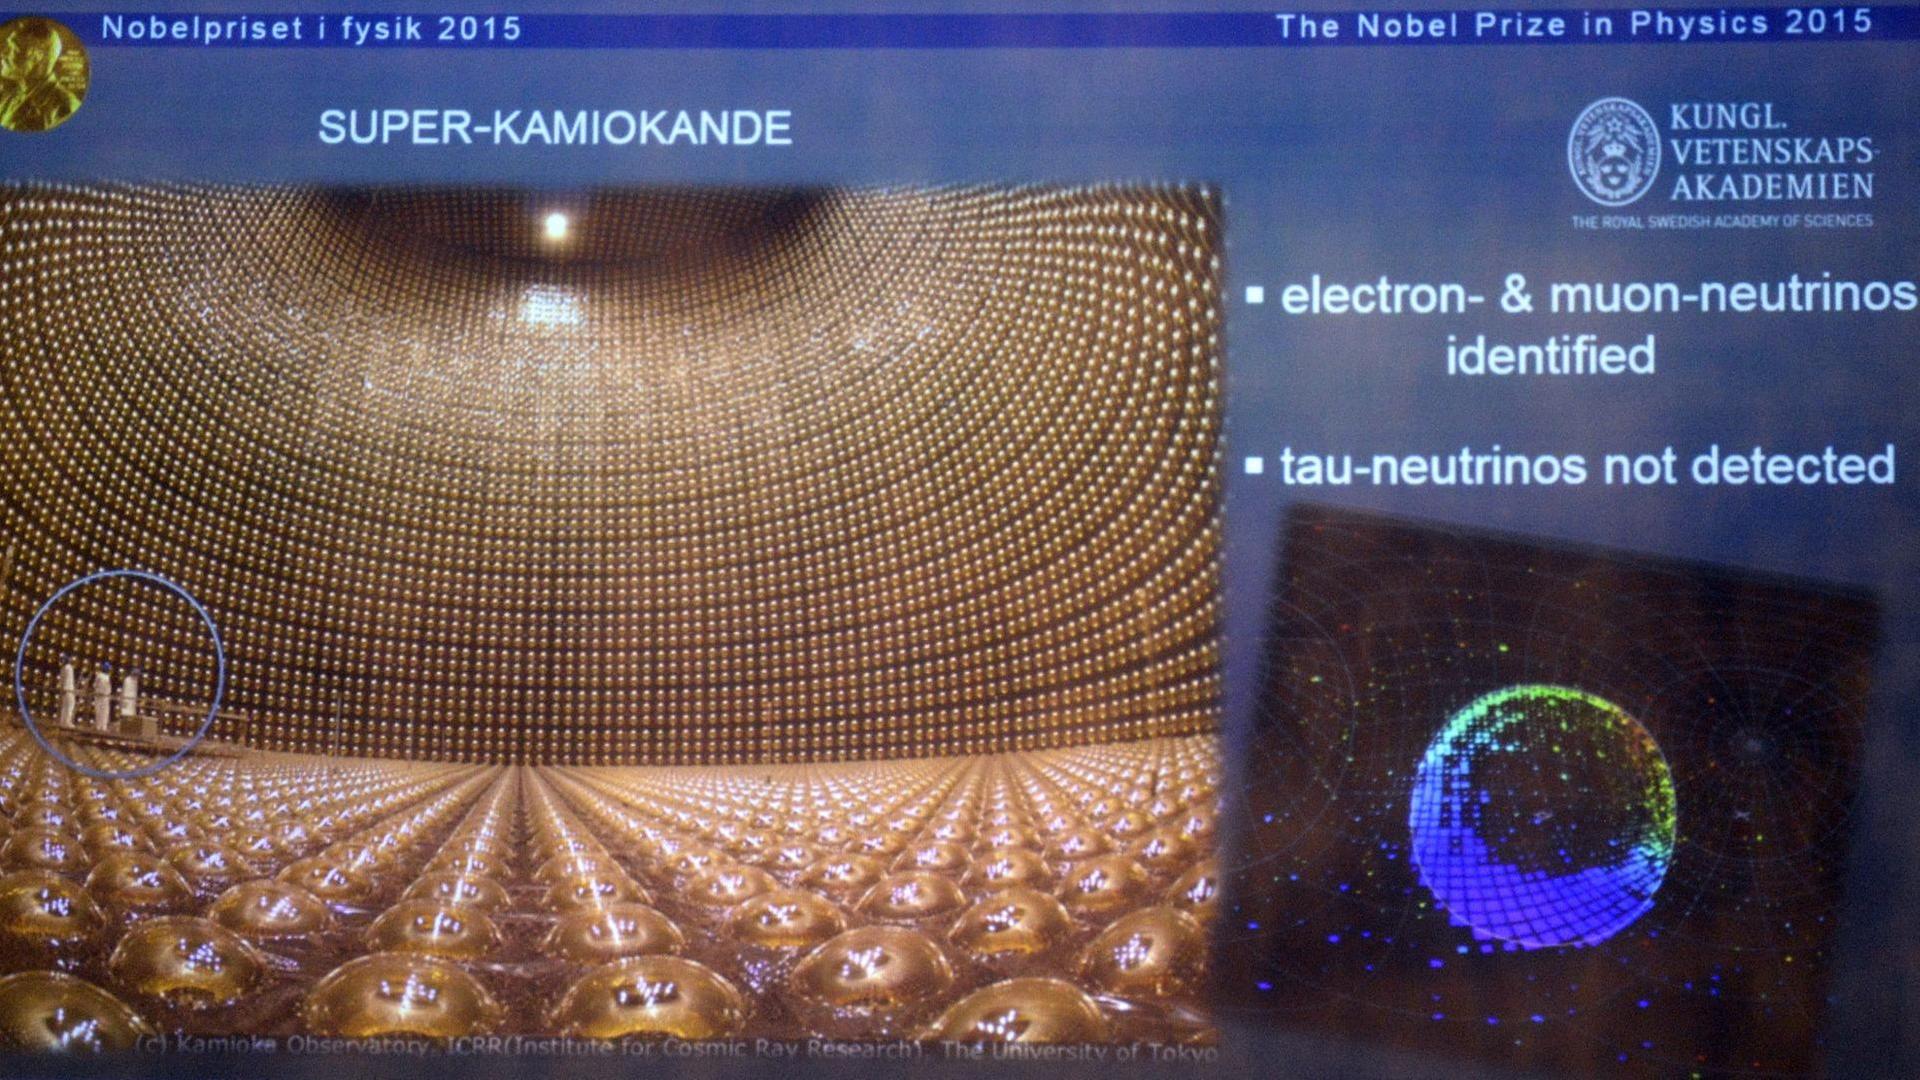 Ein Bild des Detektors Superkamiokande und eine Illustration, die das Forschungsgebiet von Nobelpreisträger Takaaki Kajita beschreibt.